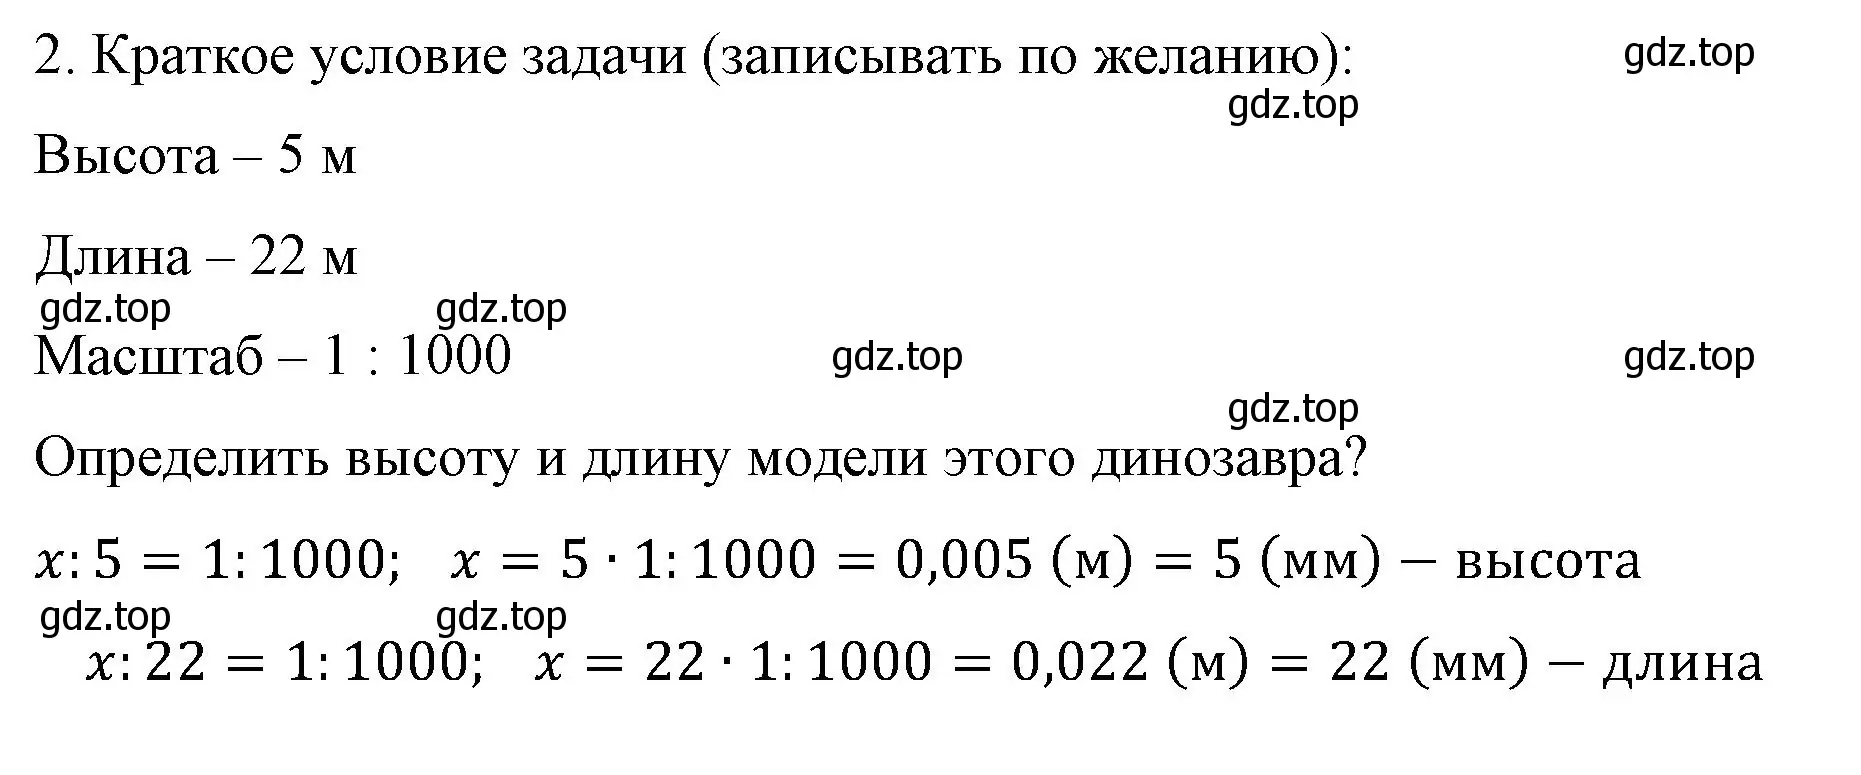 Решение номер 2 (страница 139) гдз по математике 6 класс Виленкин, Жохов, учебник 1 часть